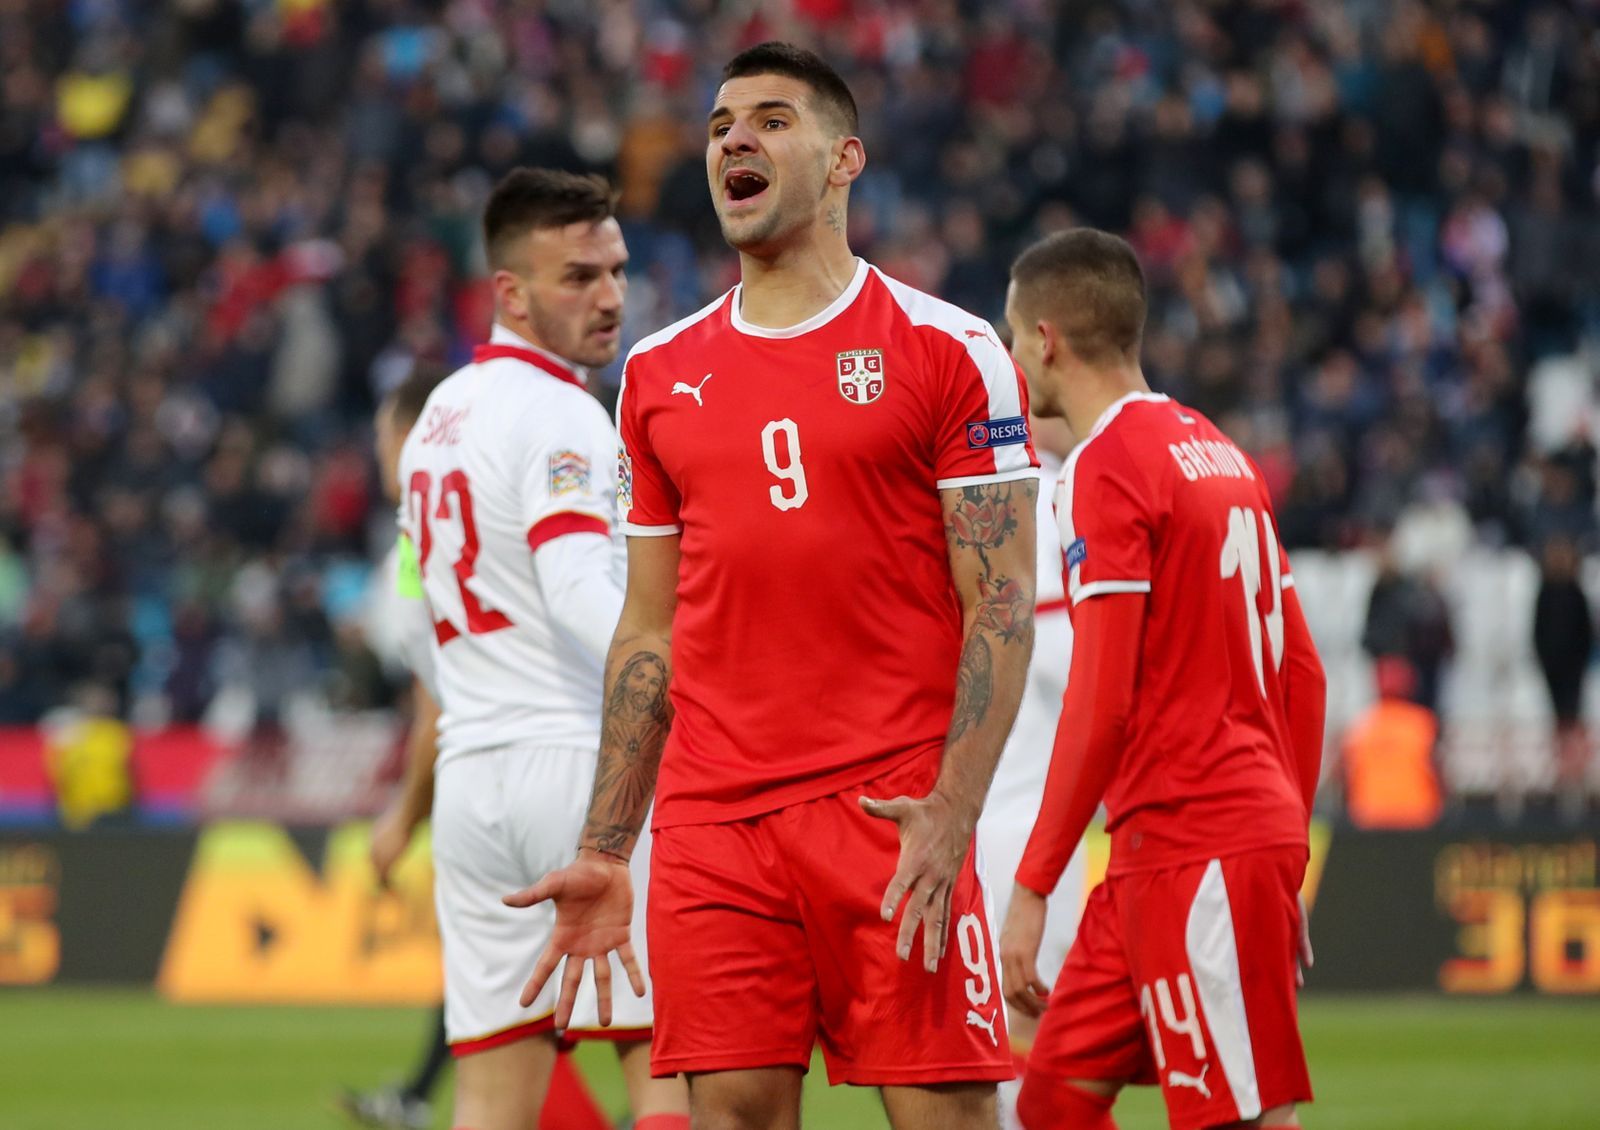 fotbal, Liga národů 2018, Srbsko - Černá Hora, Aleksandar Mitrovič po neproměněné penaltě